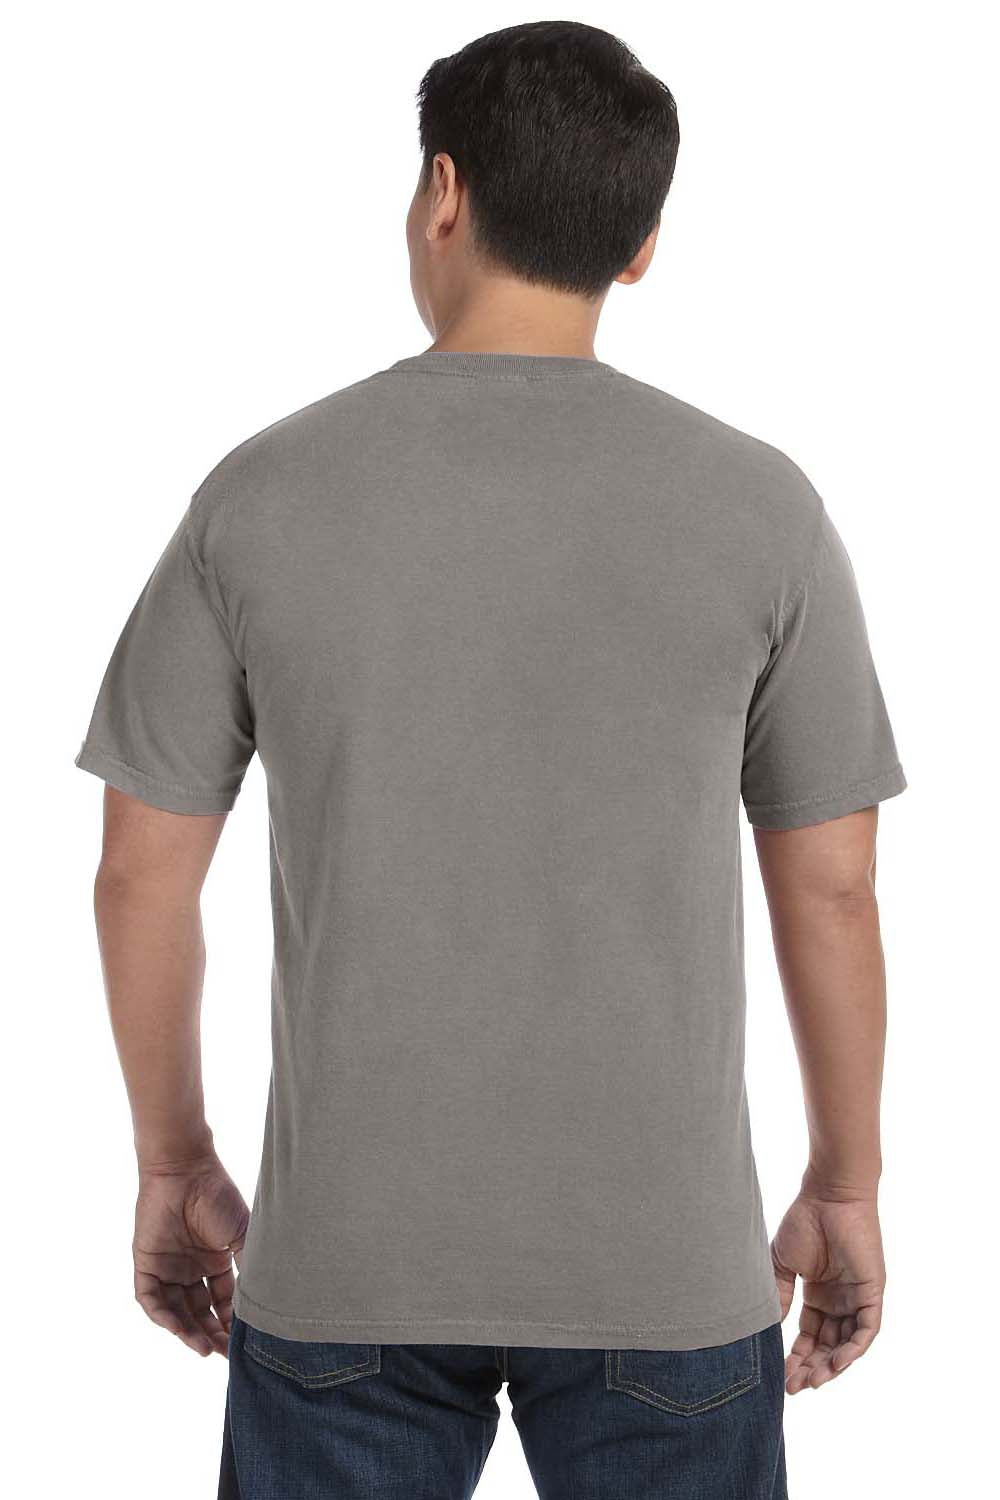 Comfort Colors C1717 Mens Short Sleeve Crewneck T-Shirt Grey Back